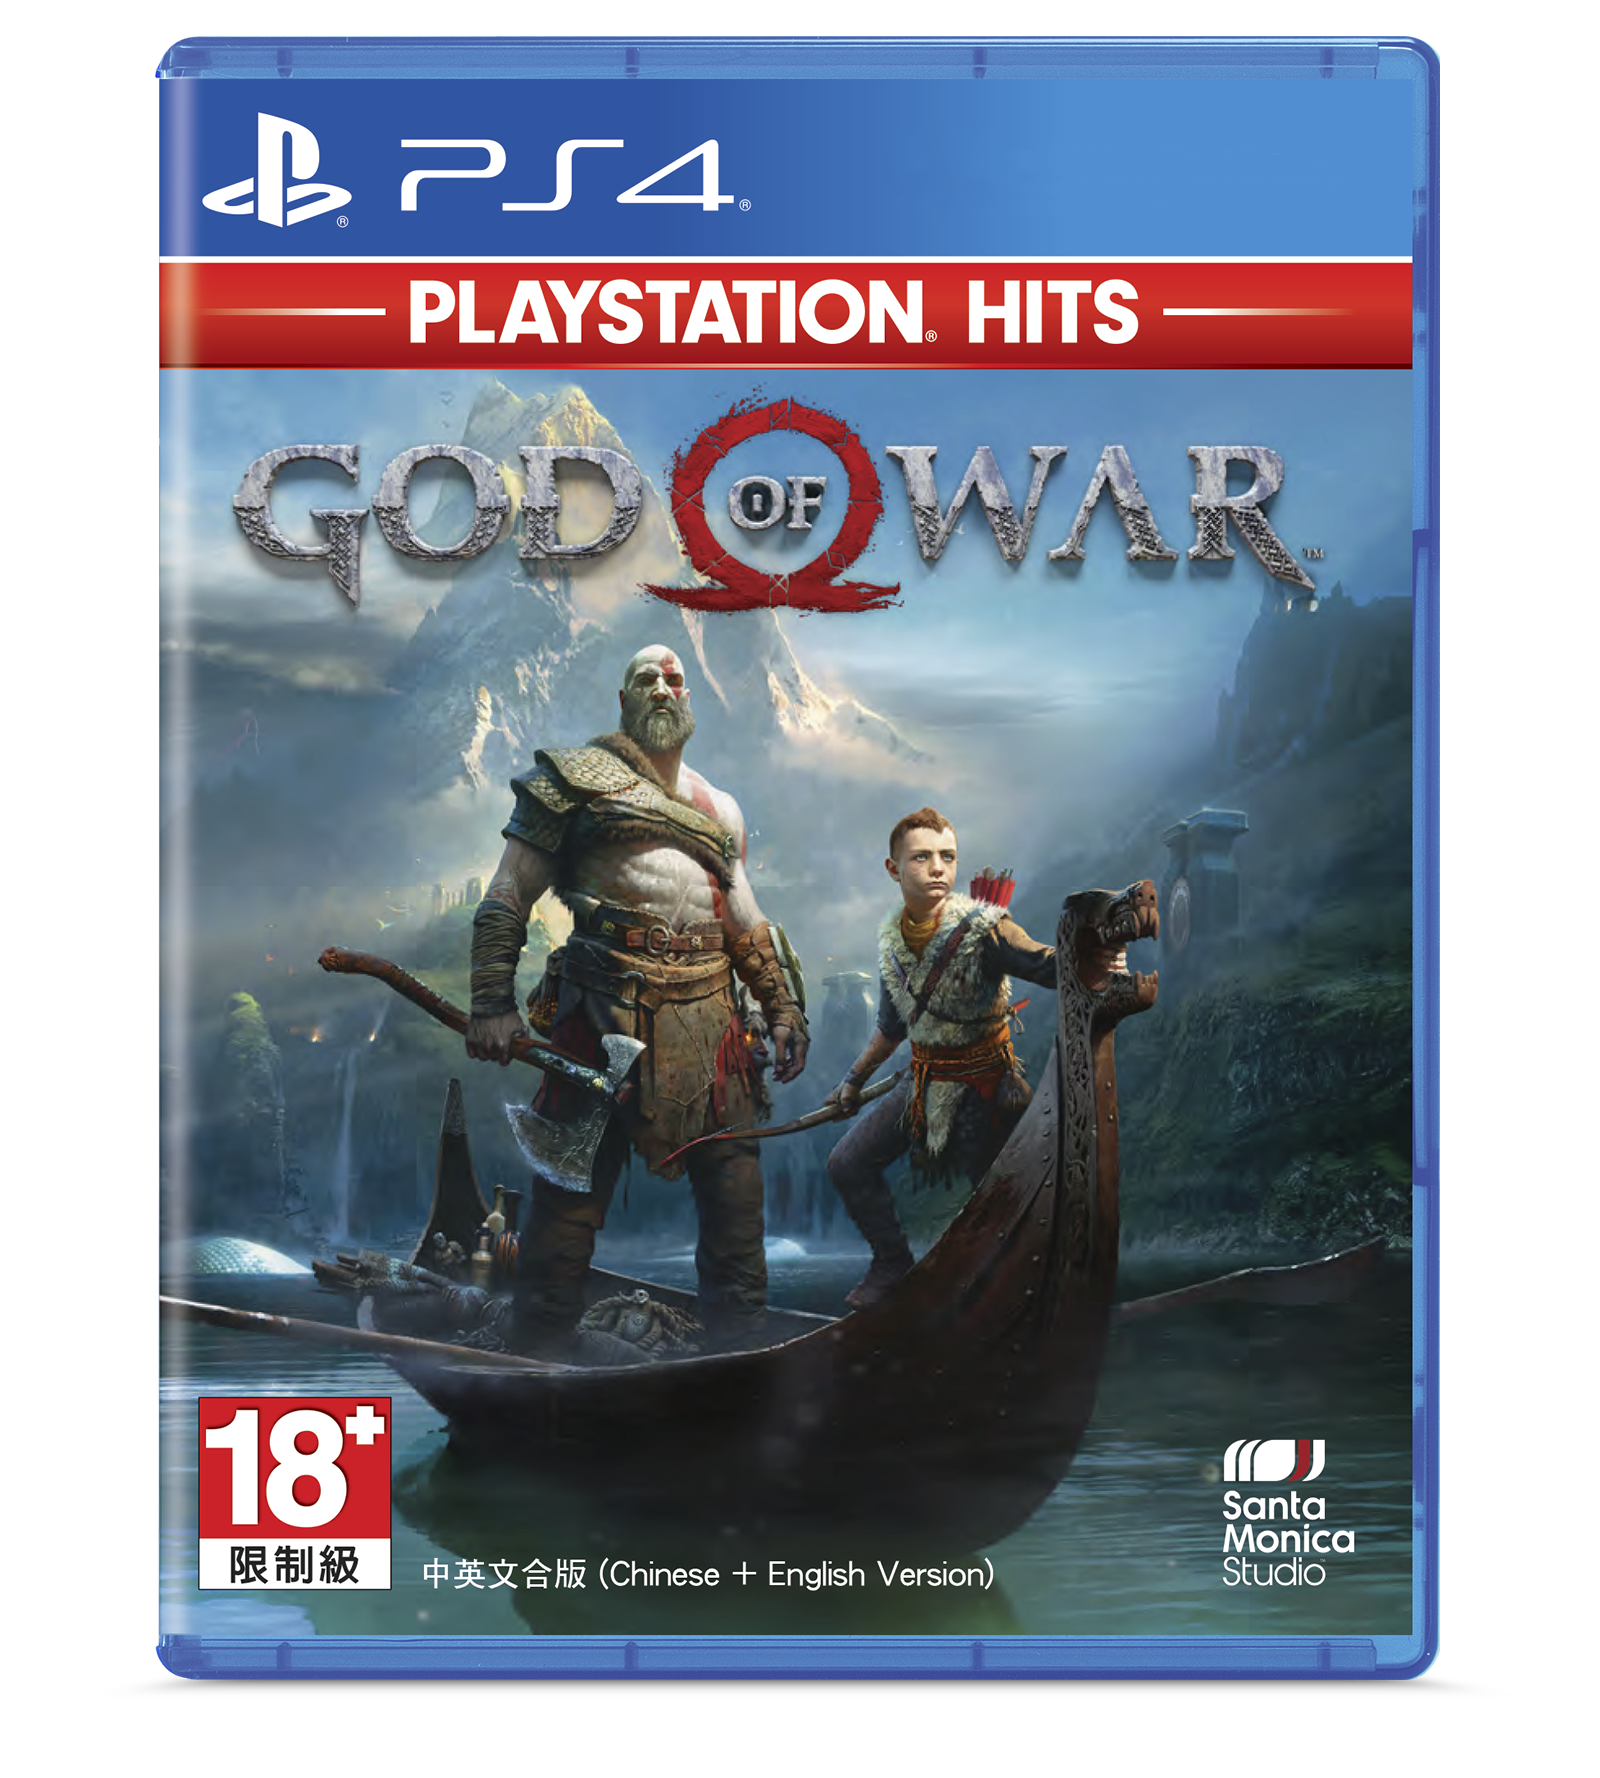  God of War PlayStation Hits Play2022 deal